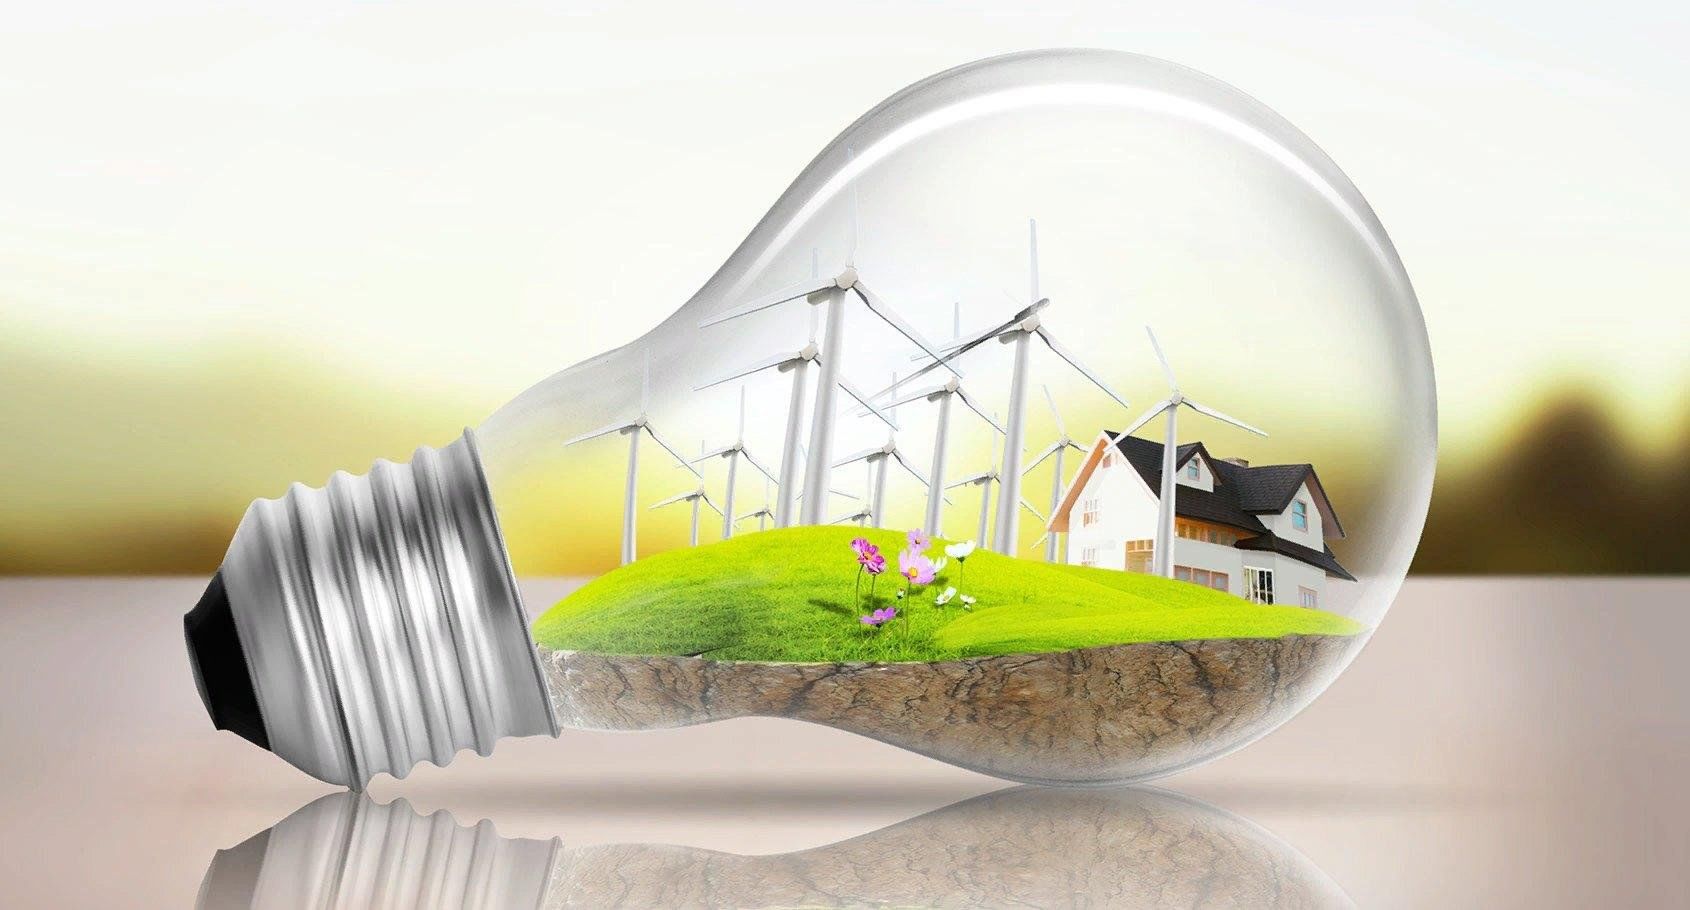 Экономичной технологии. Энергосберегающие технологии. Современные энергосберегающие технологии. Энергосбережение и энергоэффективность. Экология и экономия.